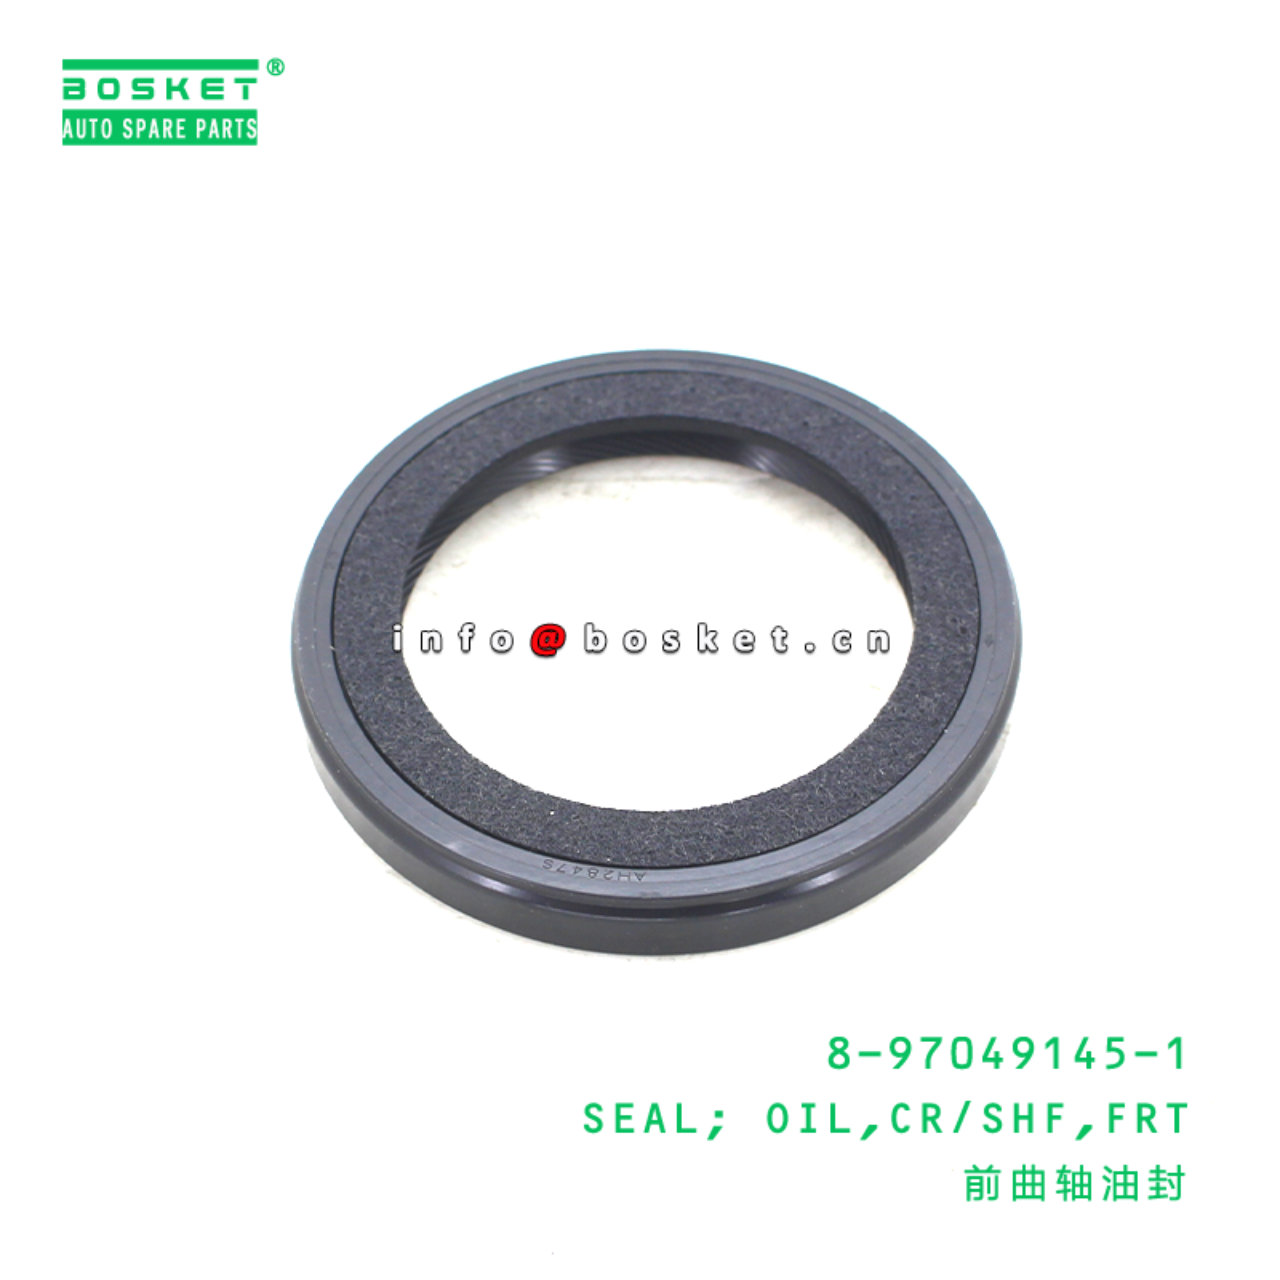 8-97049145-1 Front Crankshaft Oil Seal 8970491451 Suitable for 